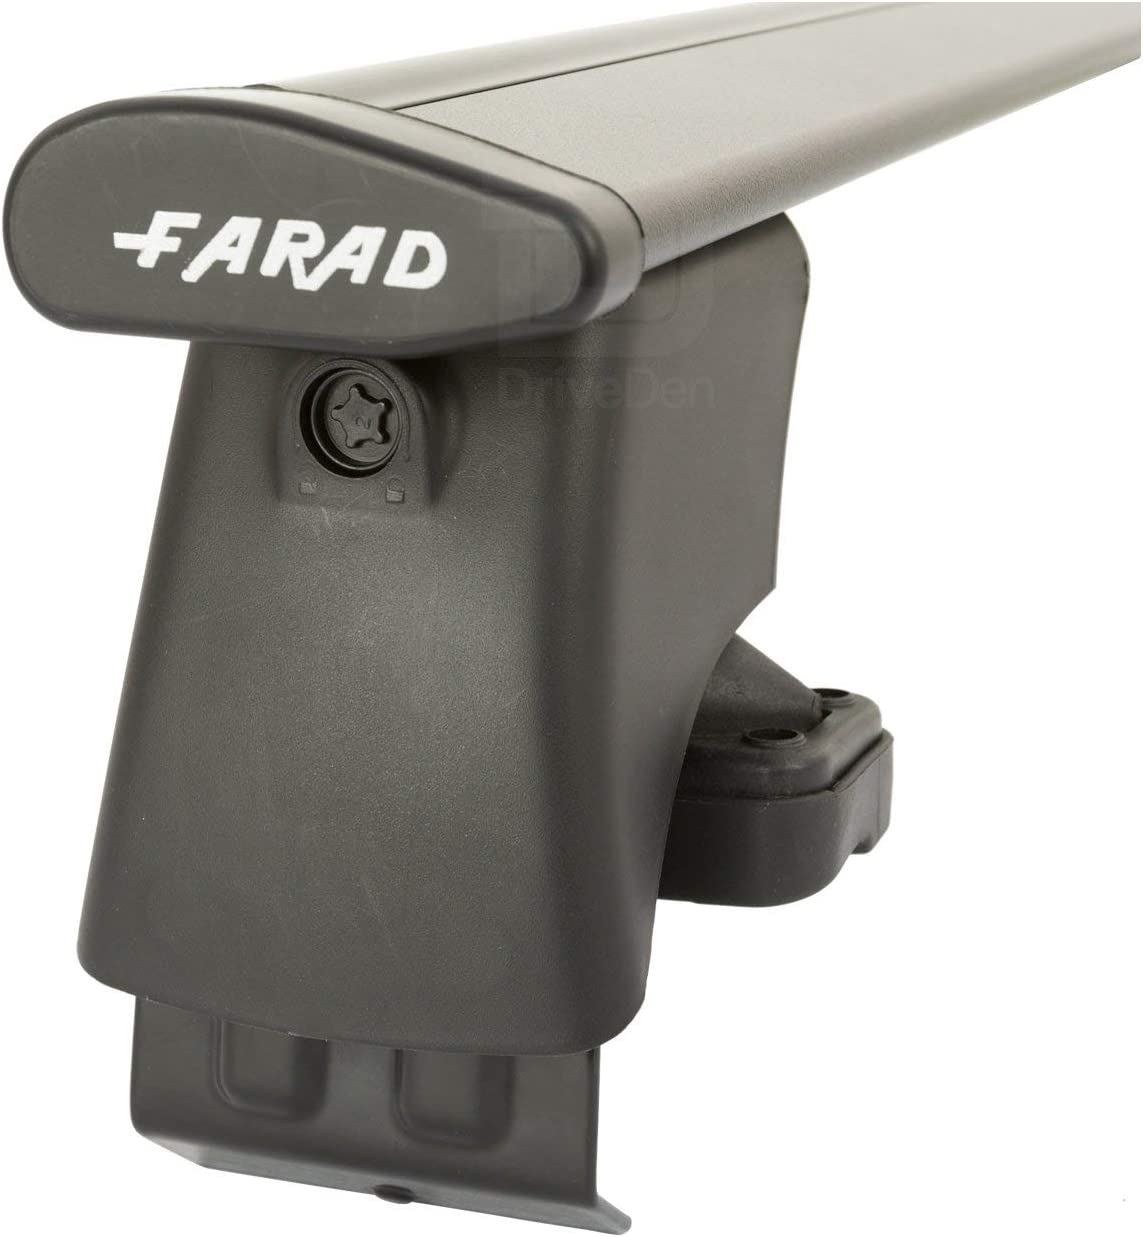 FARAD-Kit H2 per barre portatutto - Fiat Grande Punto 2005-2012 (senza corrimano)